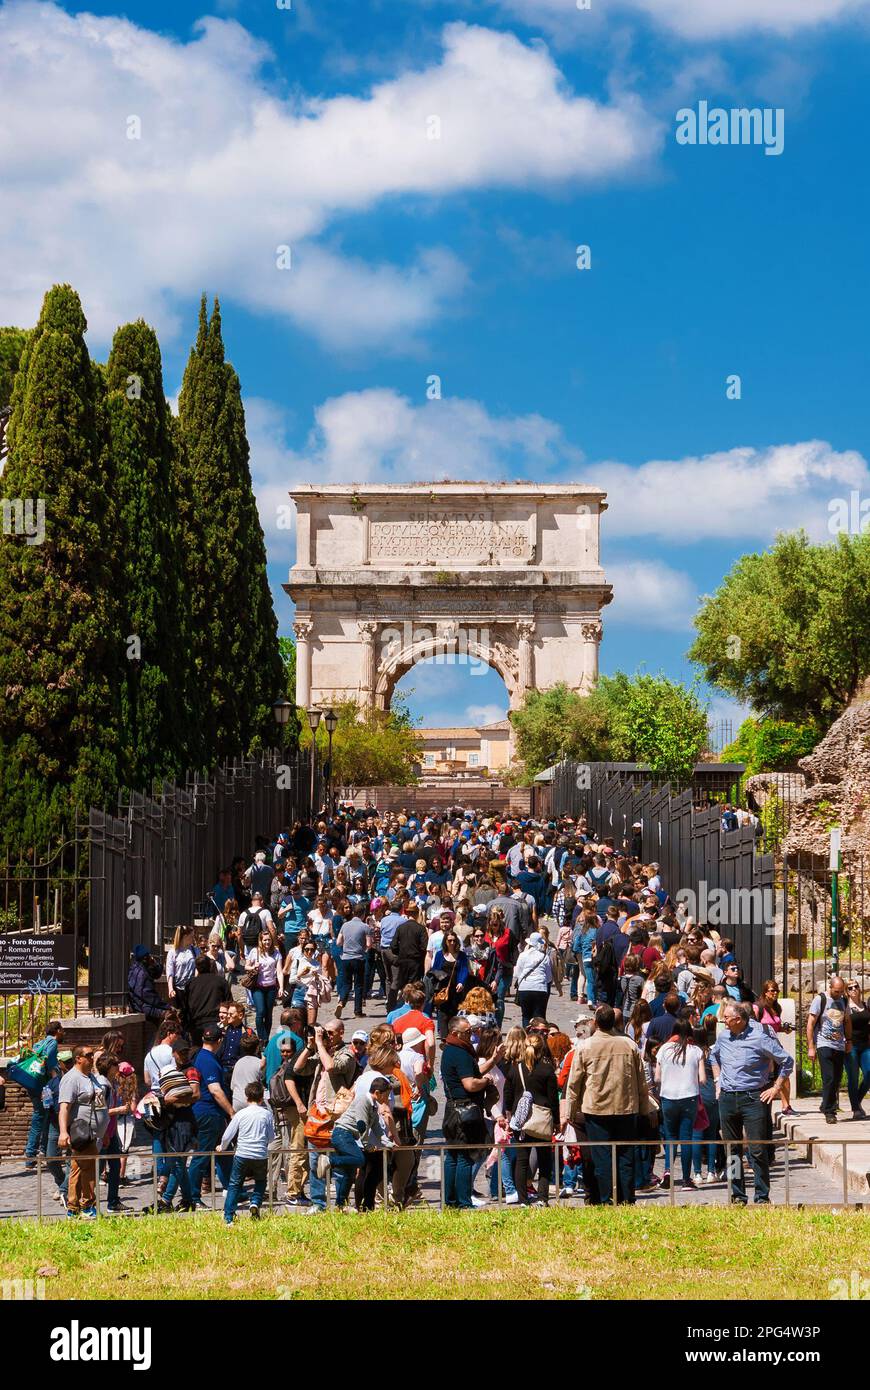 Besichtigungstour in Rom. Touristen in der Schlange, die auf das Forum Romanum über den Titusbogen warten Stockfoto